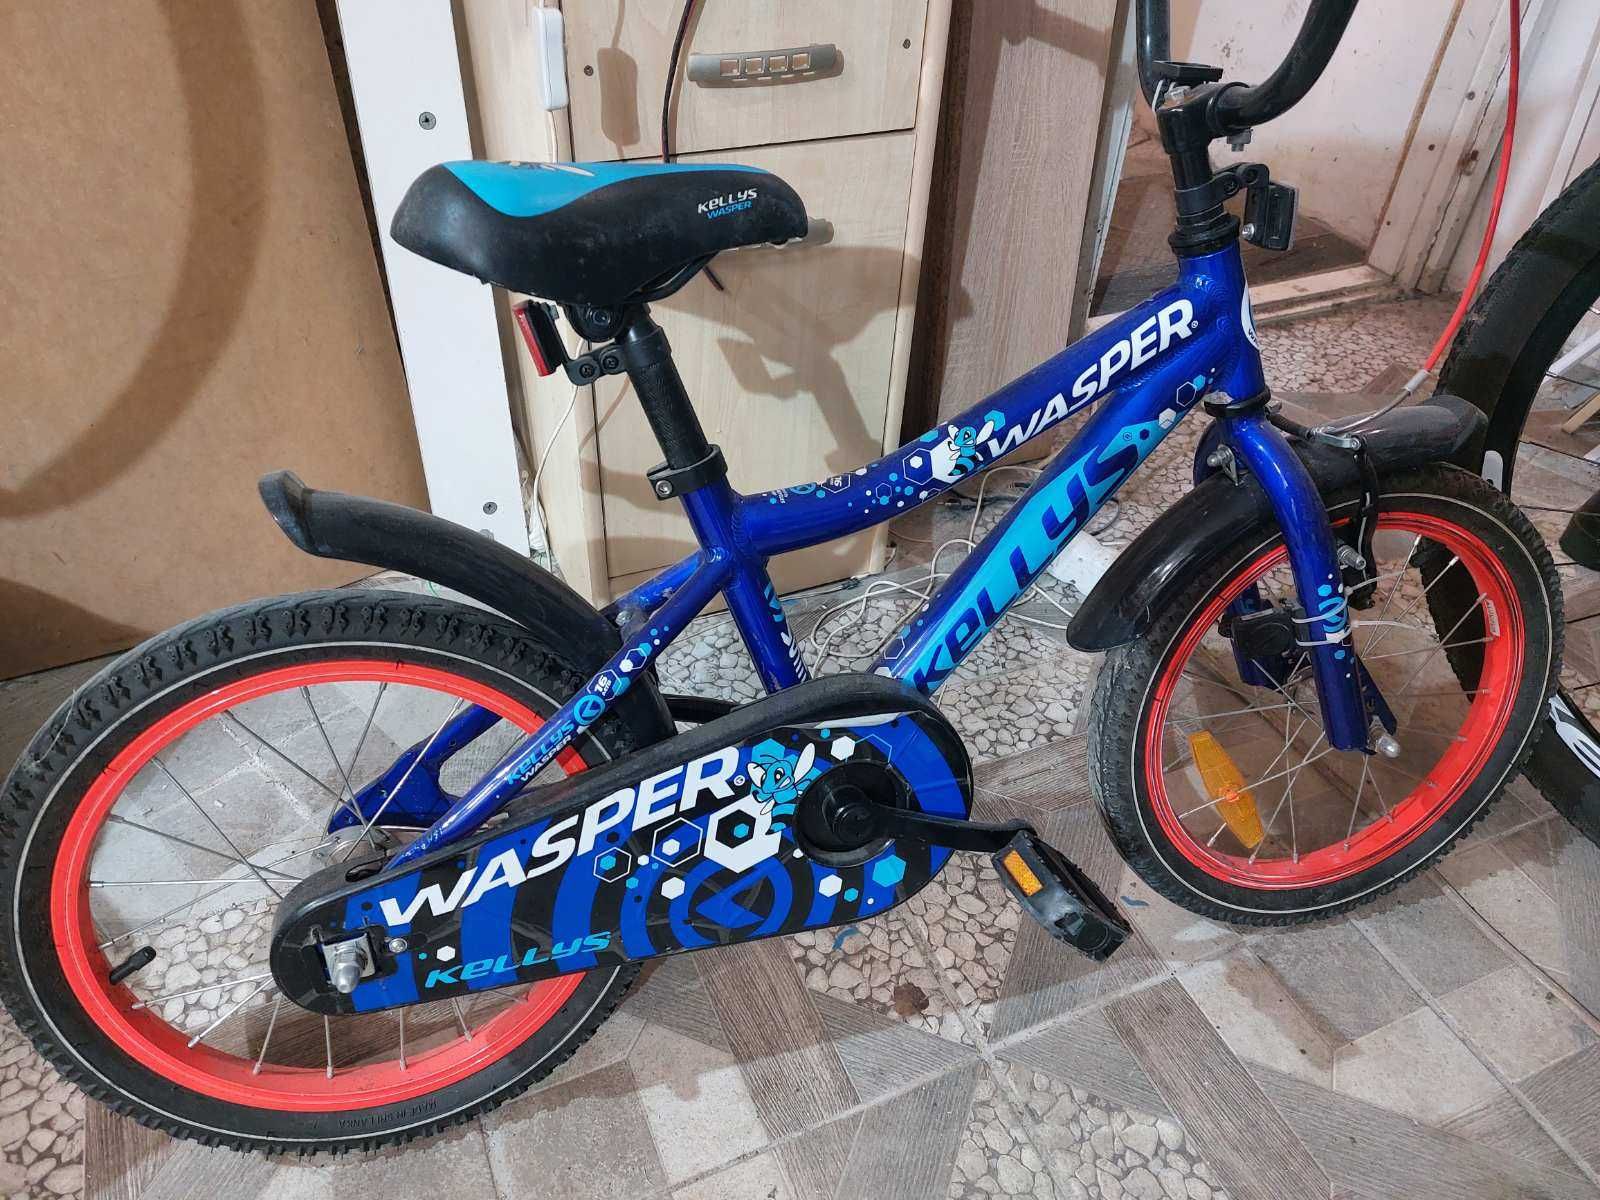 wasper детско колело